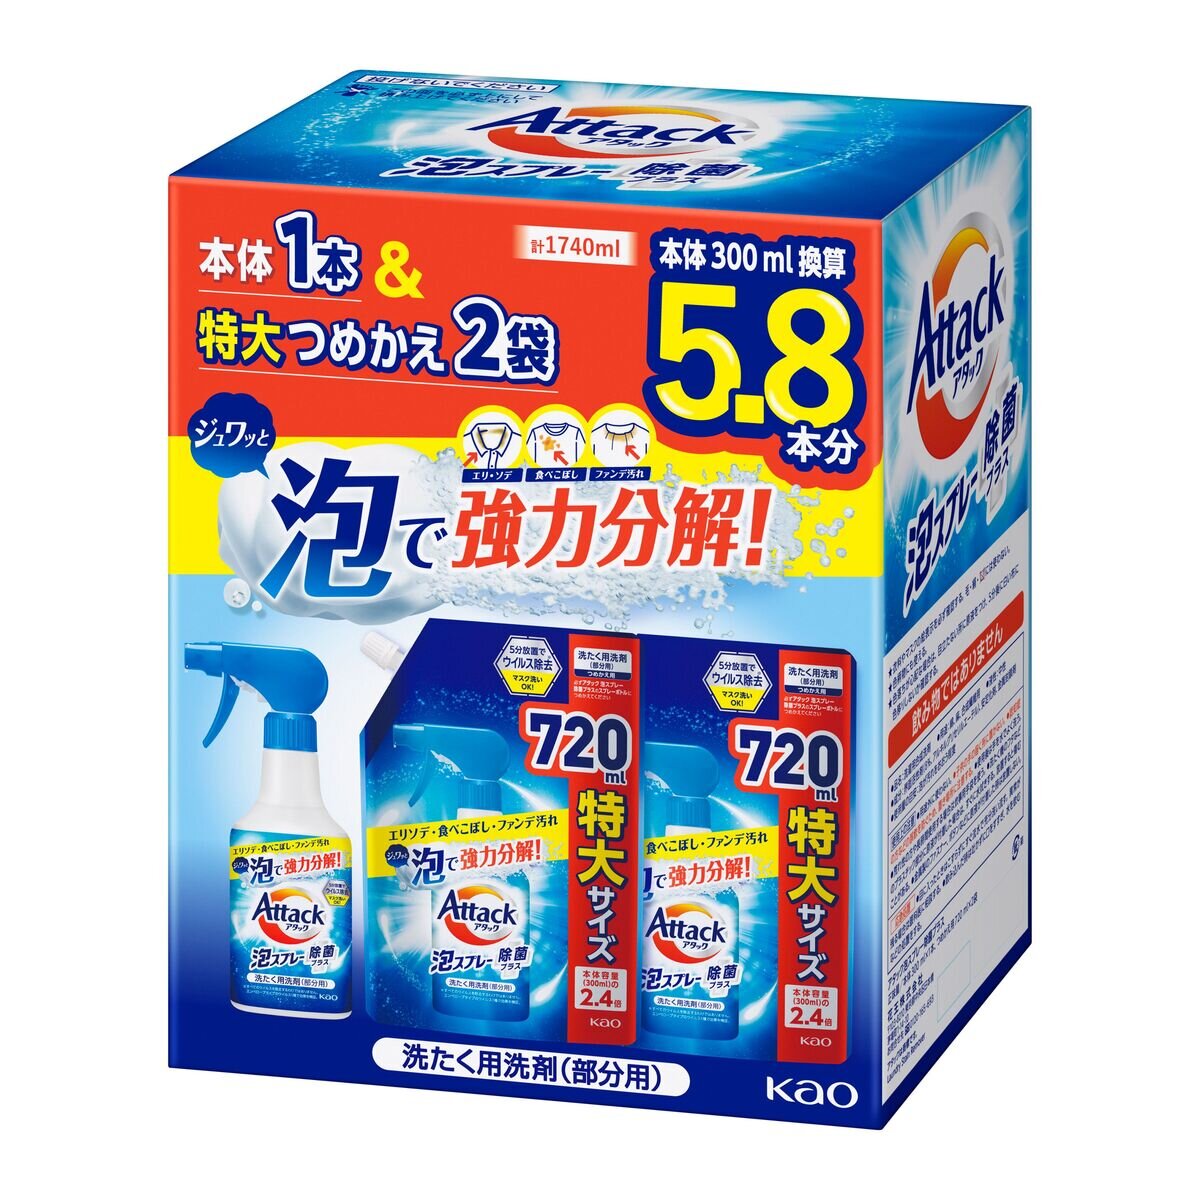 アタック 泡スプレー 本体 300ml + 詰め替え 720ml x 2 | Costco Japan